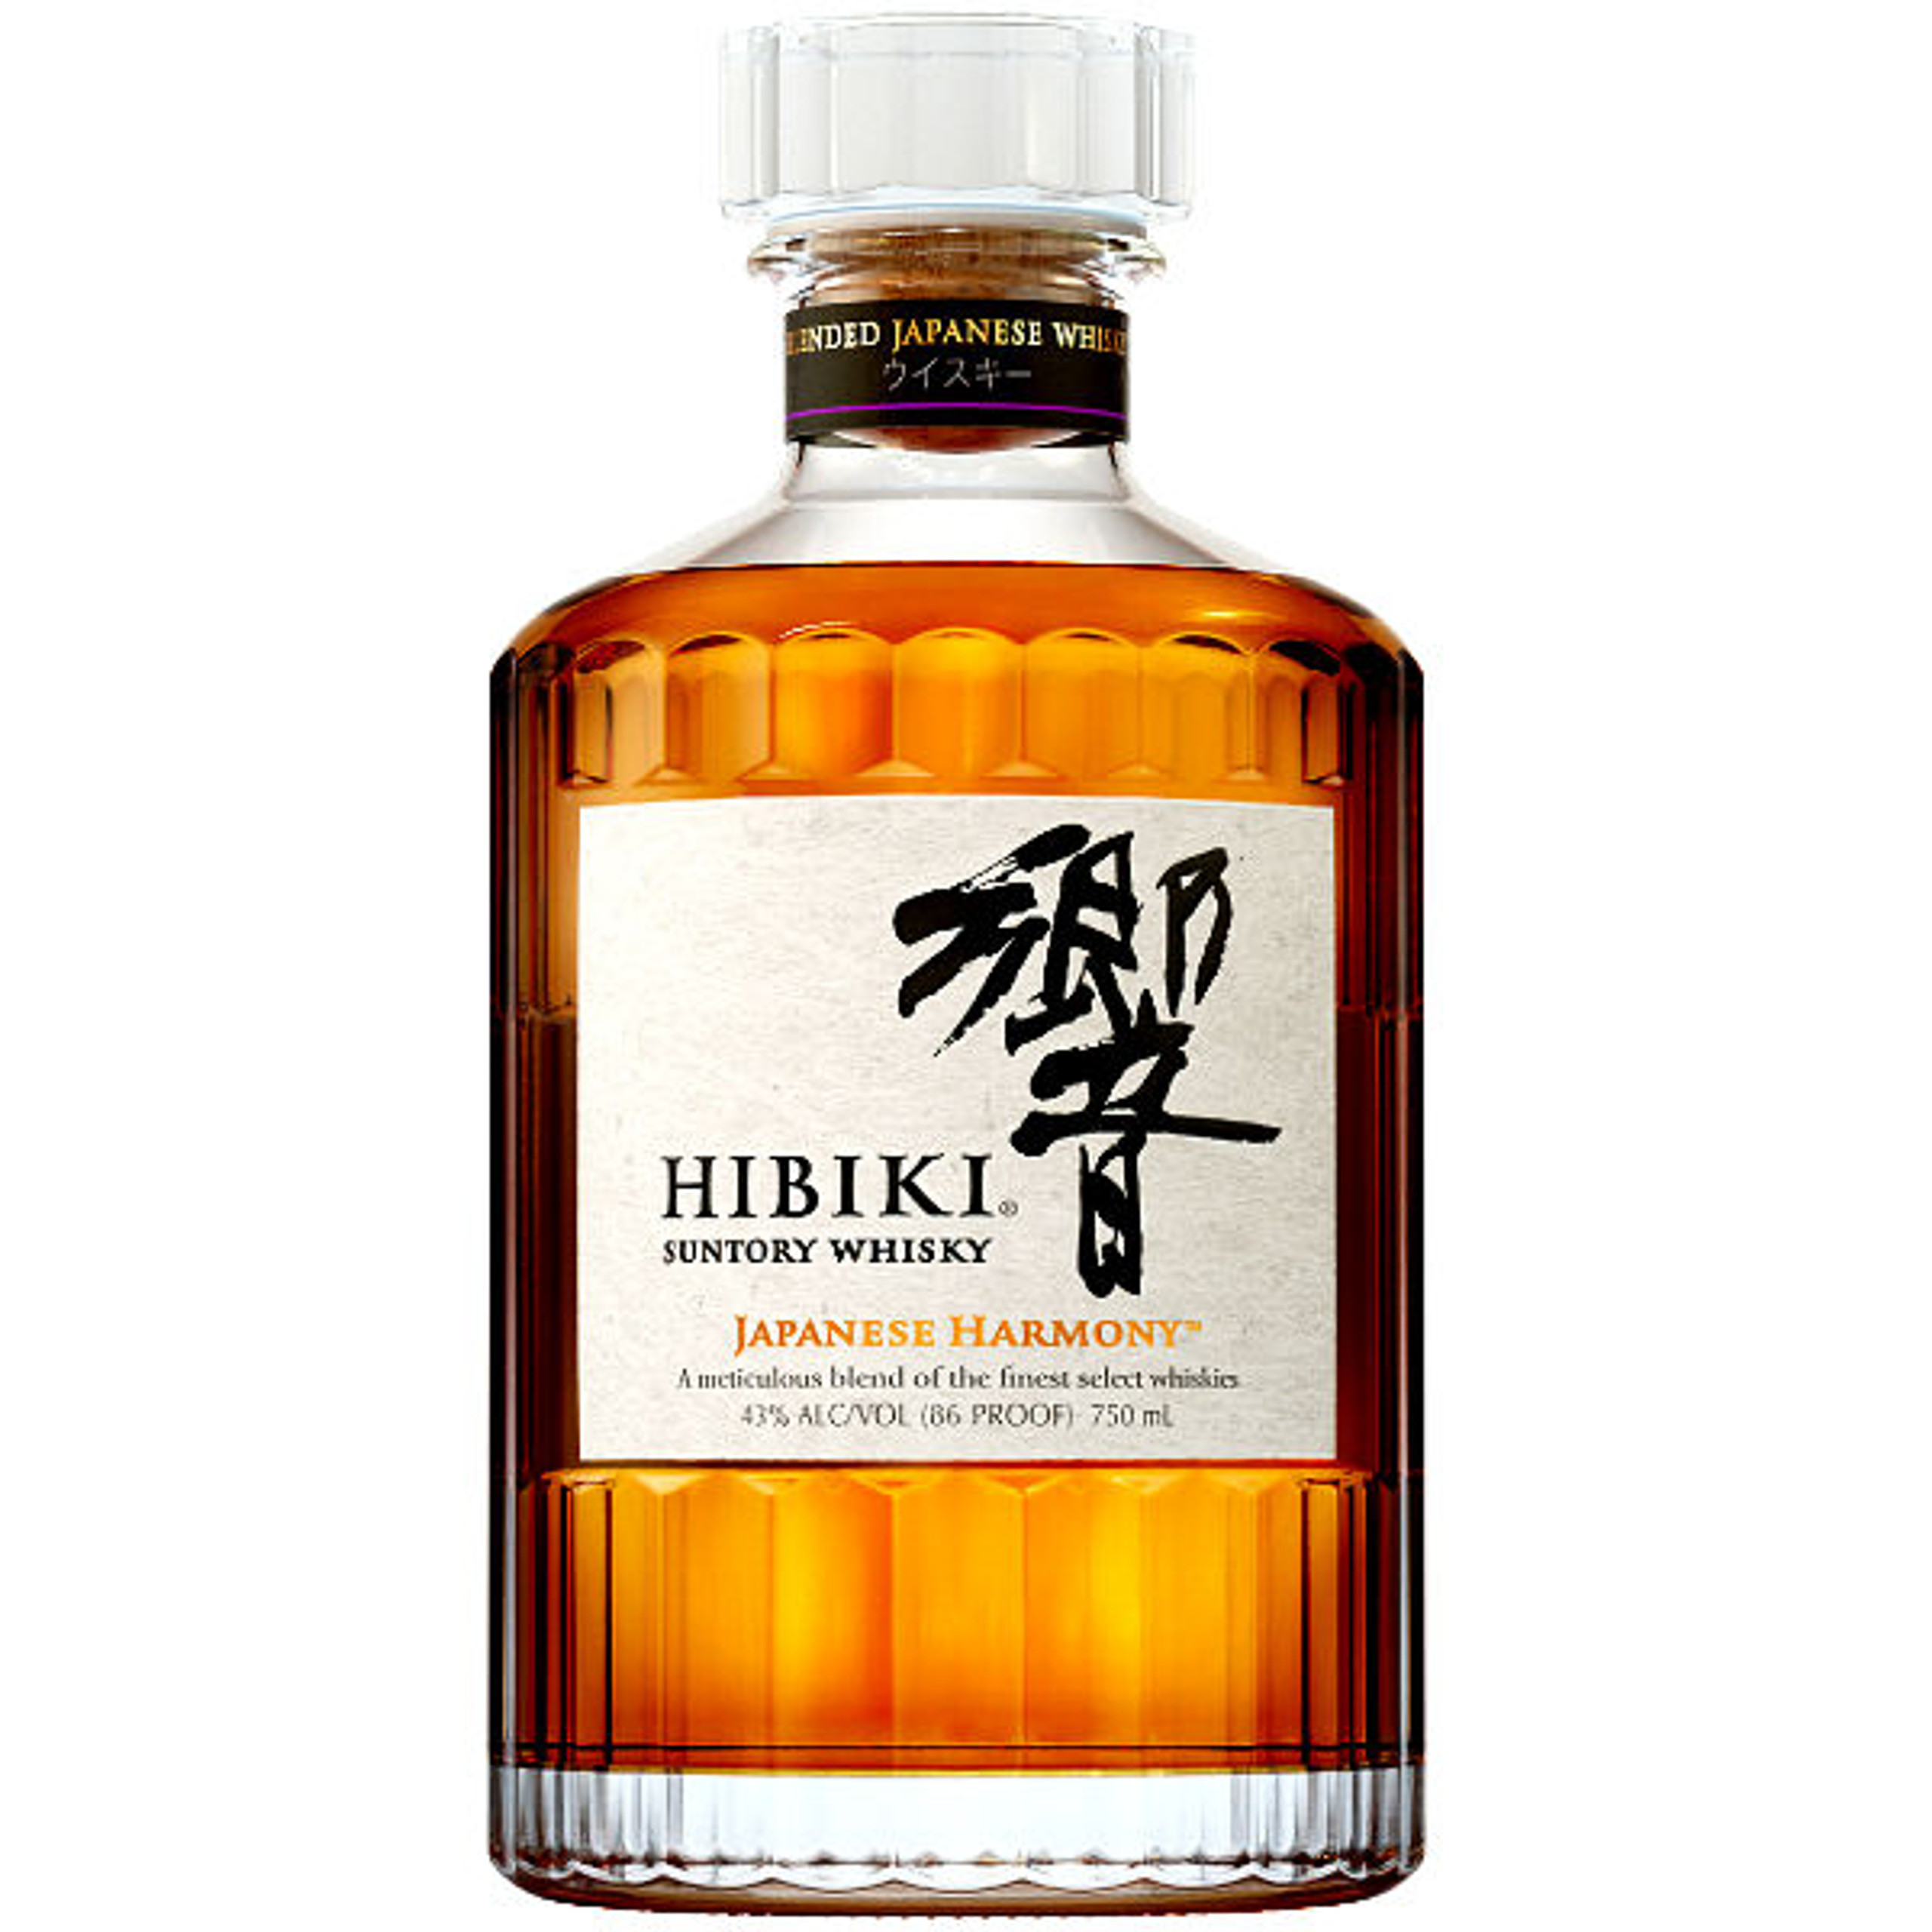 suntory-hibiki-japanese-harmony-whisky__52544.1597161746.jpg